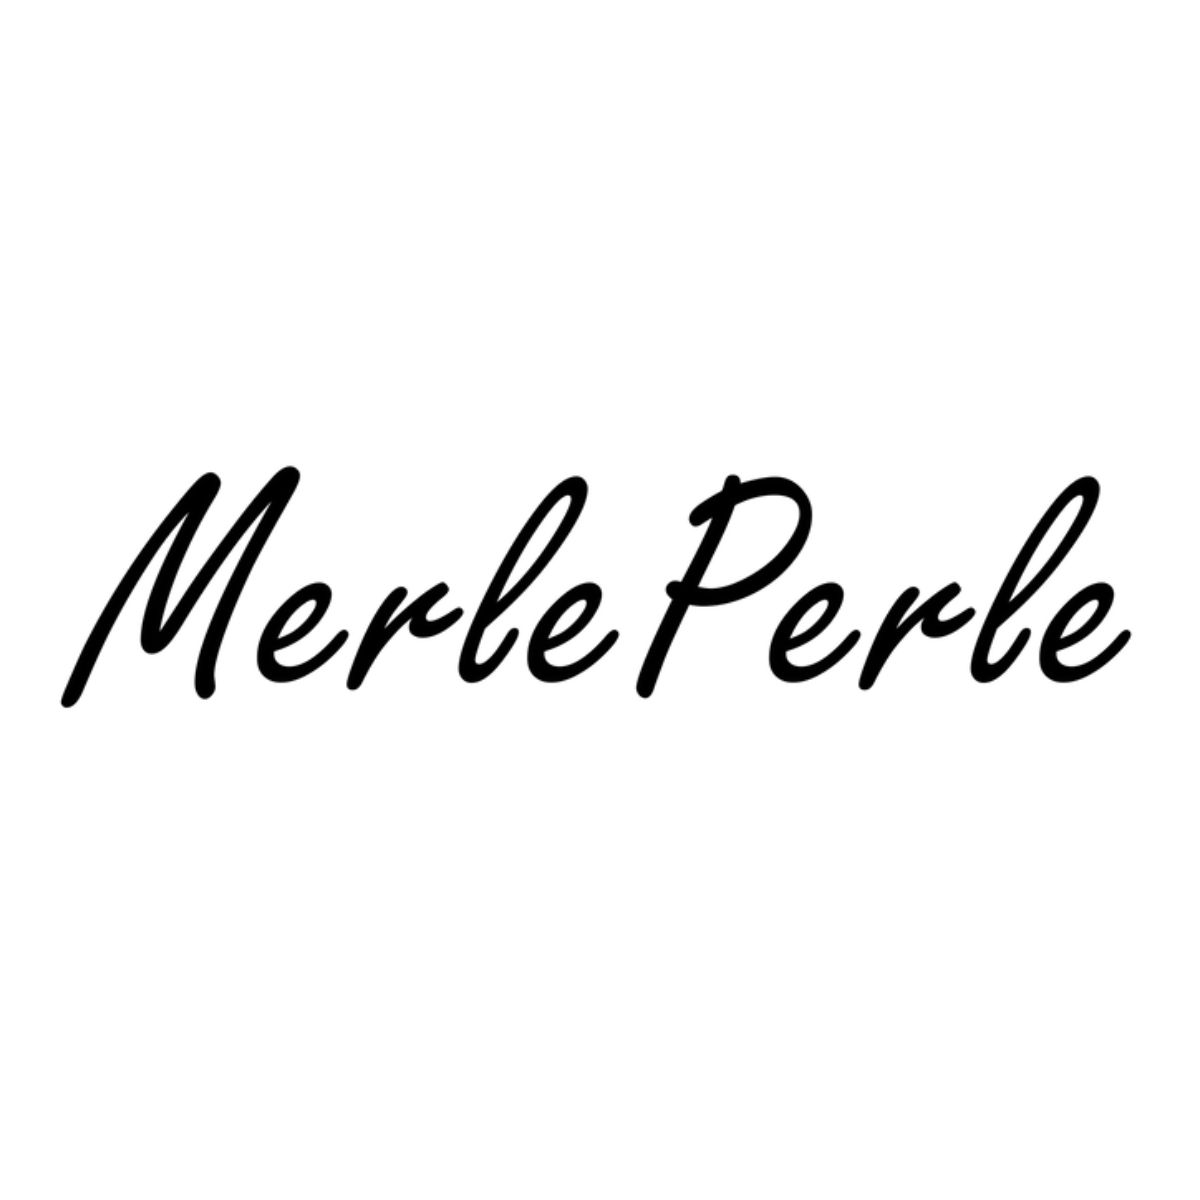 MerlePerle